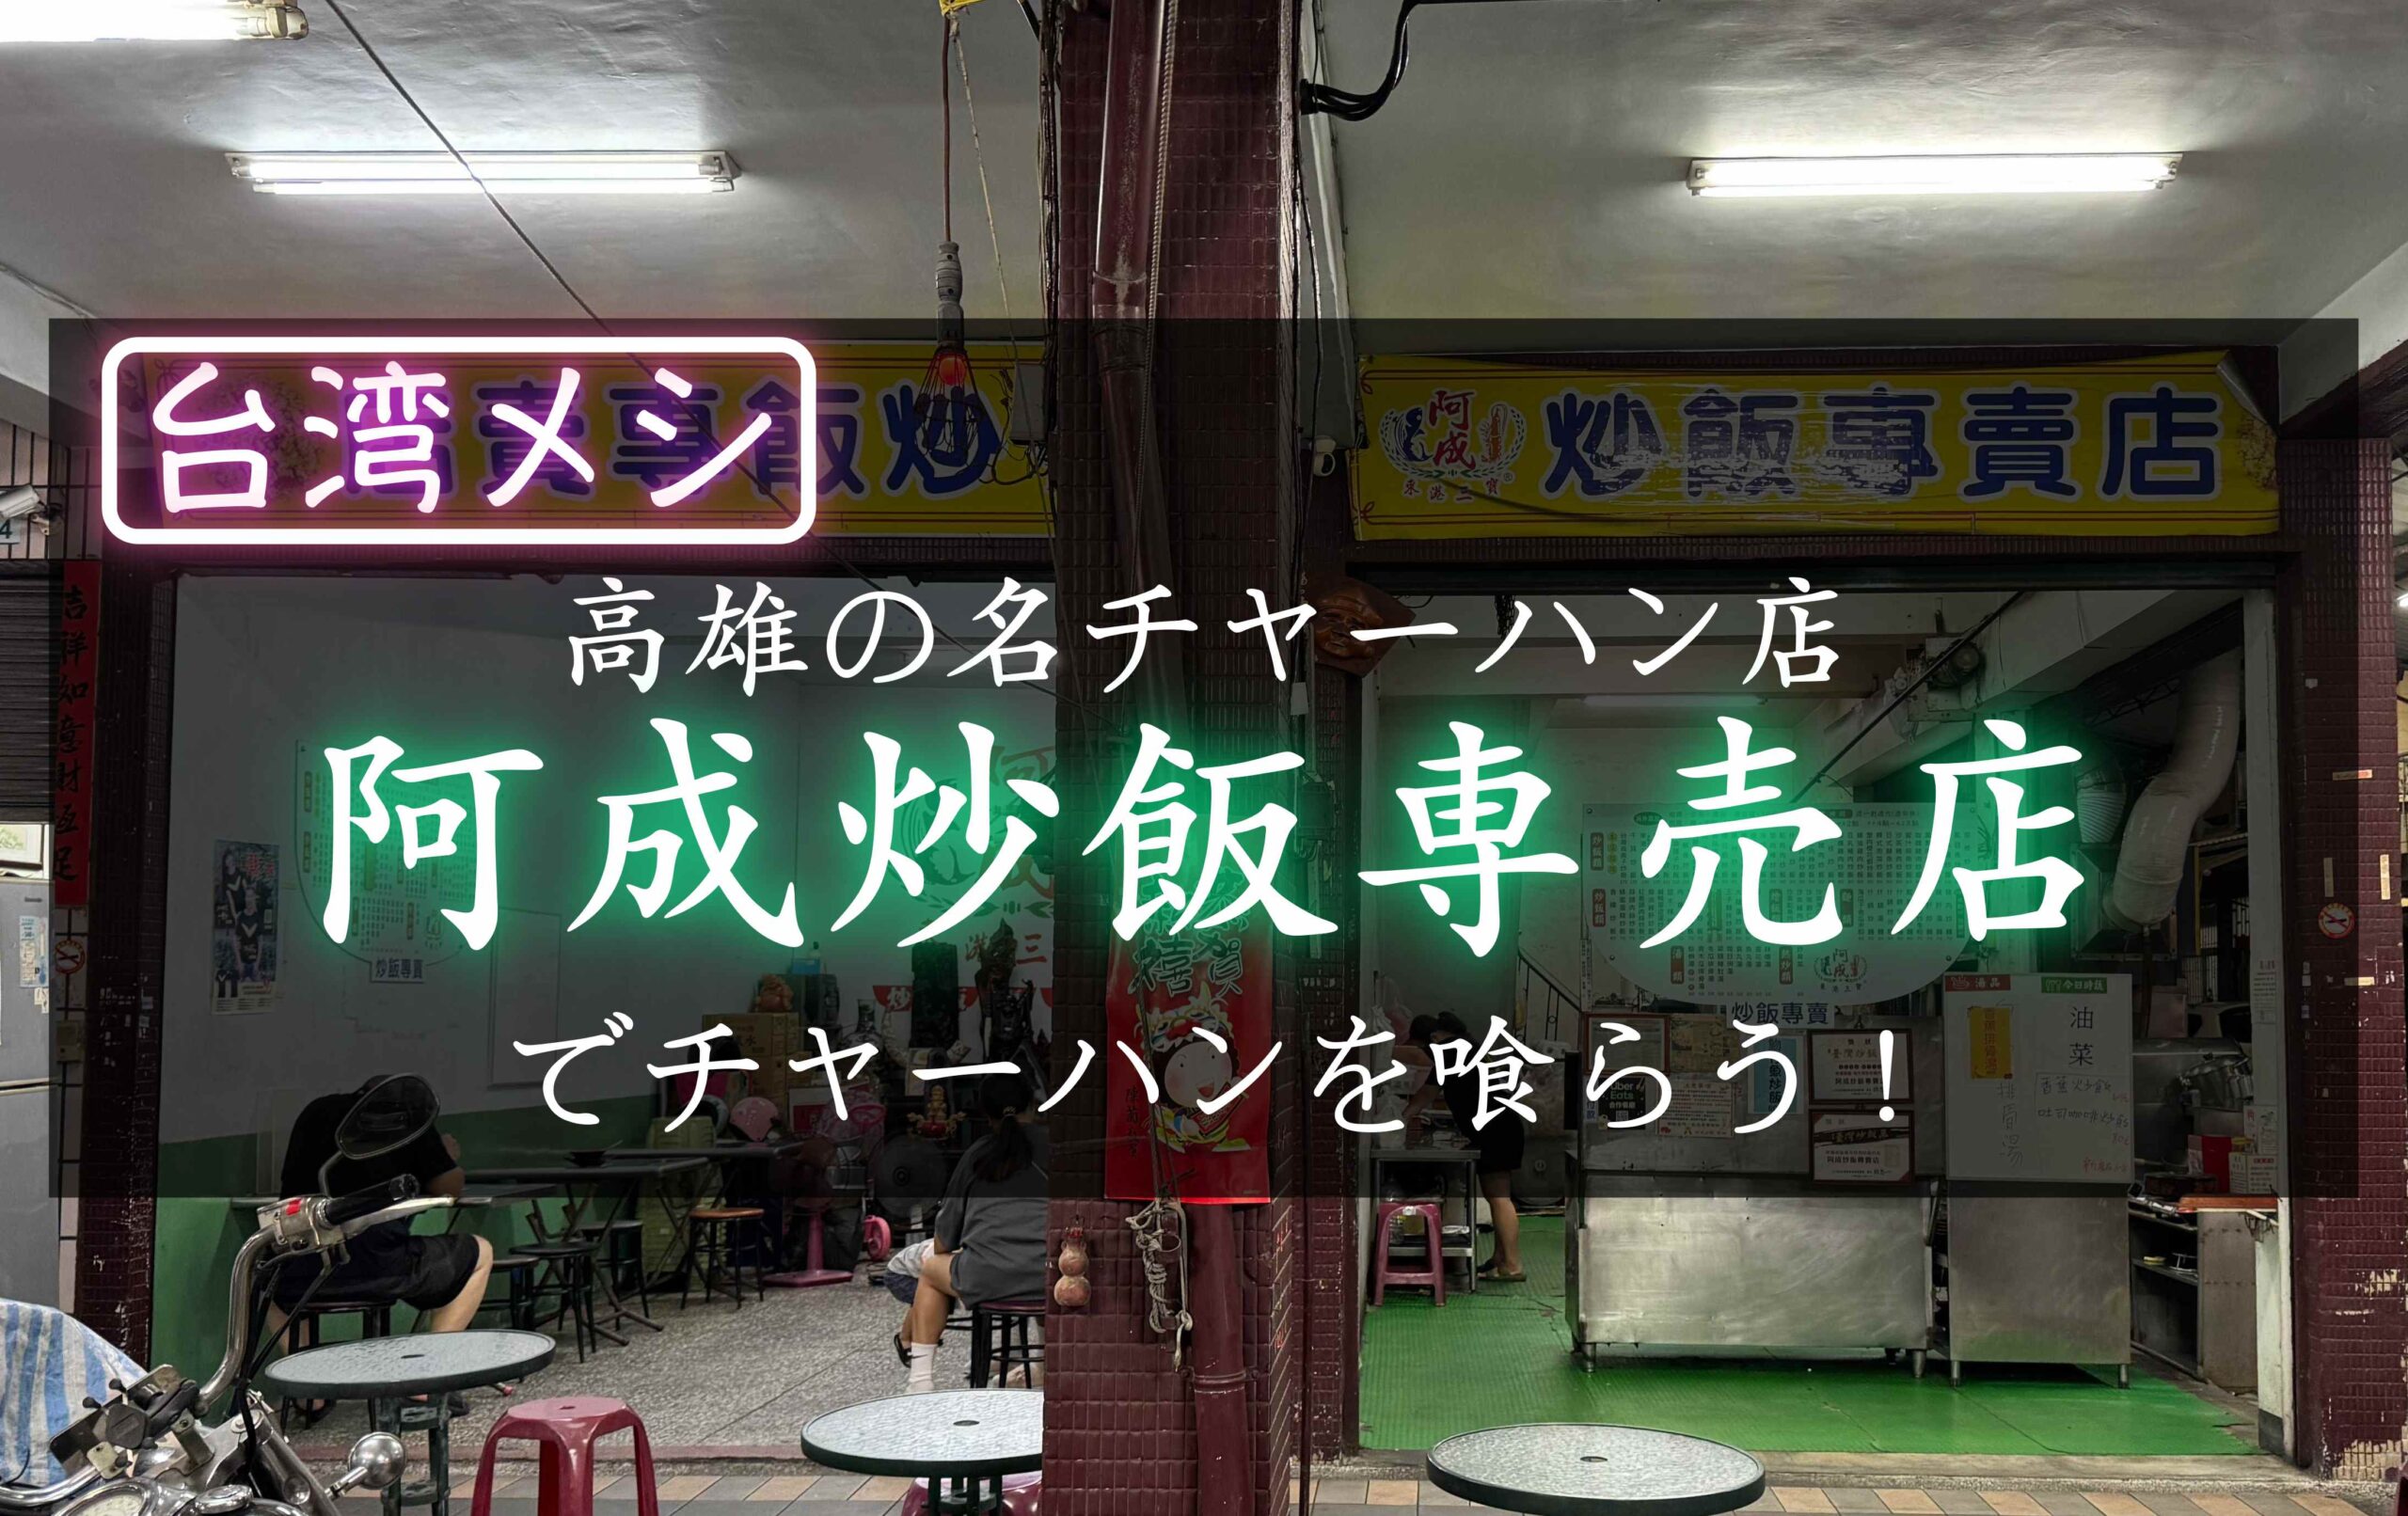 台湾高雄のおいしいチャーハンのお店、阿成炒飯専売店